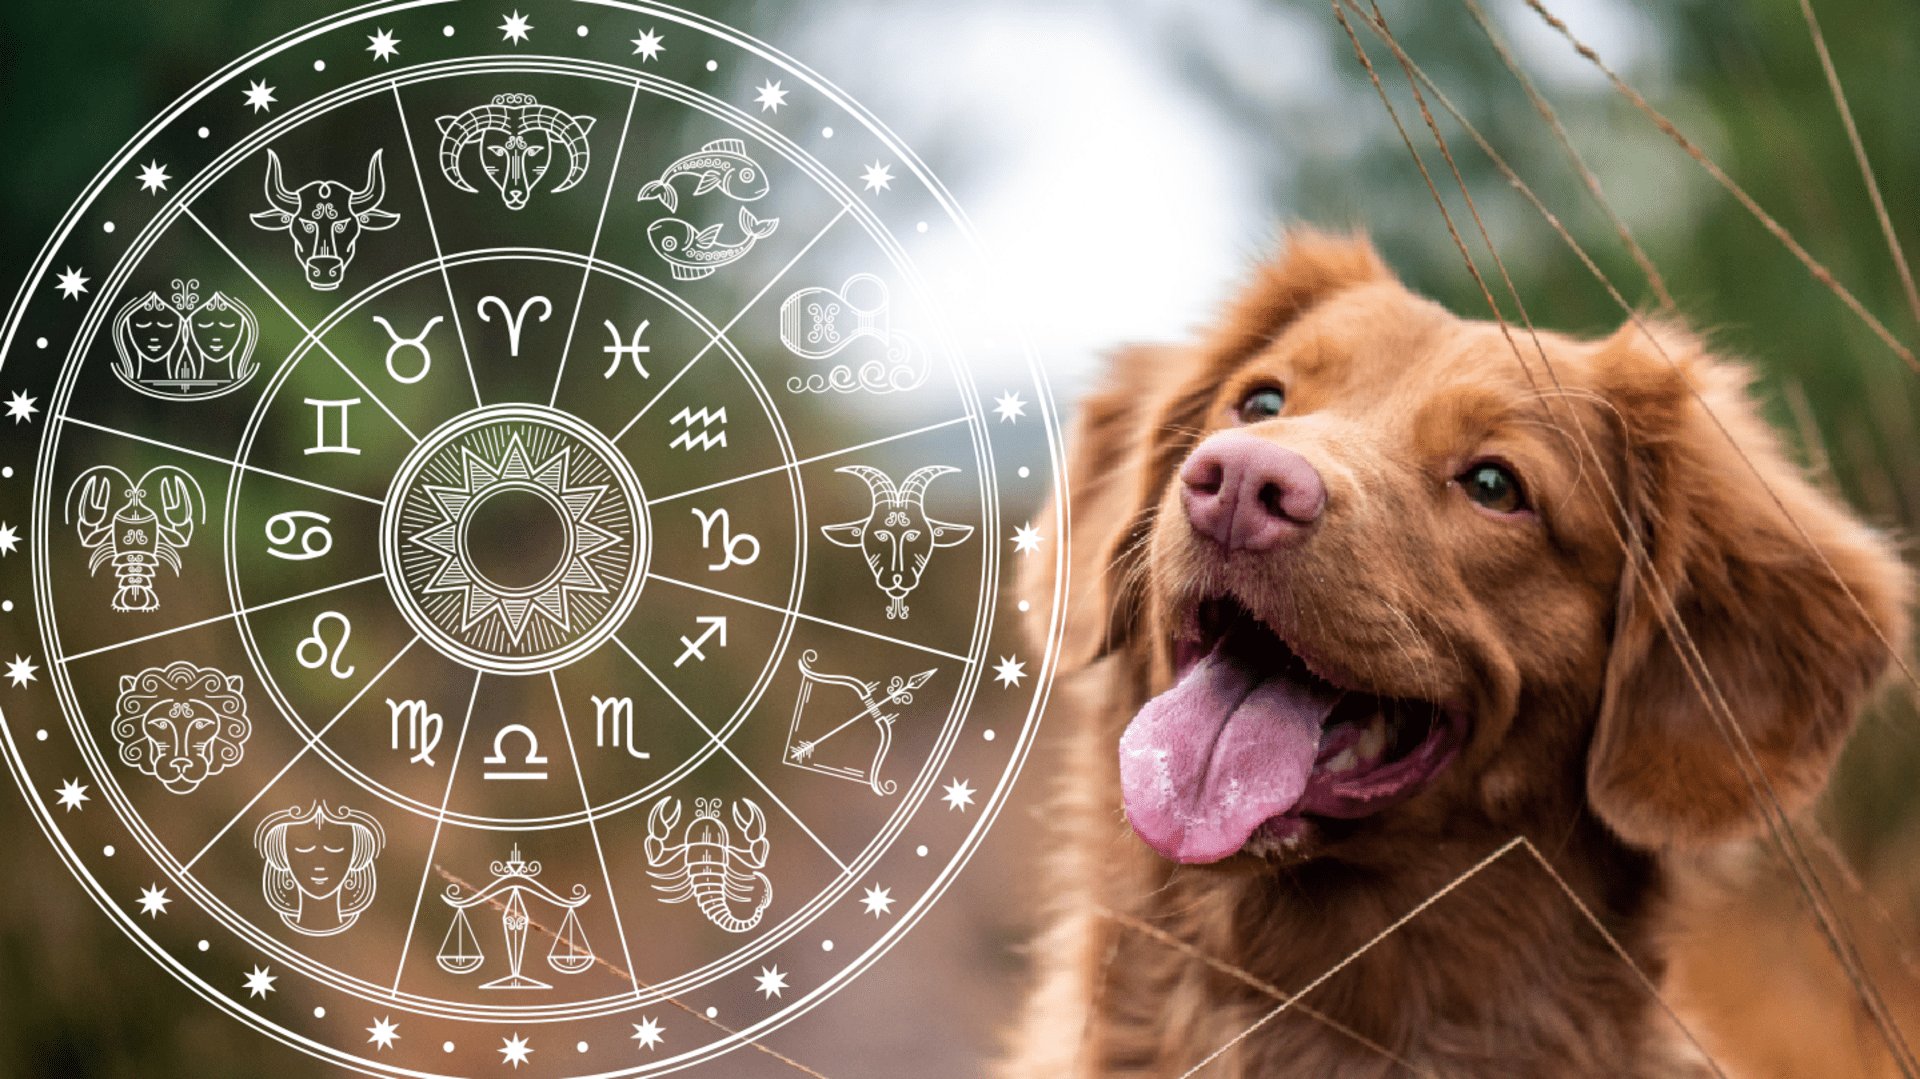 Psí horoskop: Kdo chce lépe porozumět chování svého psa, měl by vědět, v jakém znamení horoskopu se narodil.